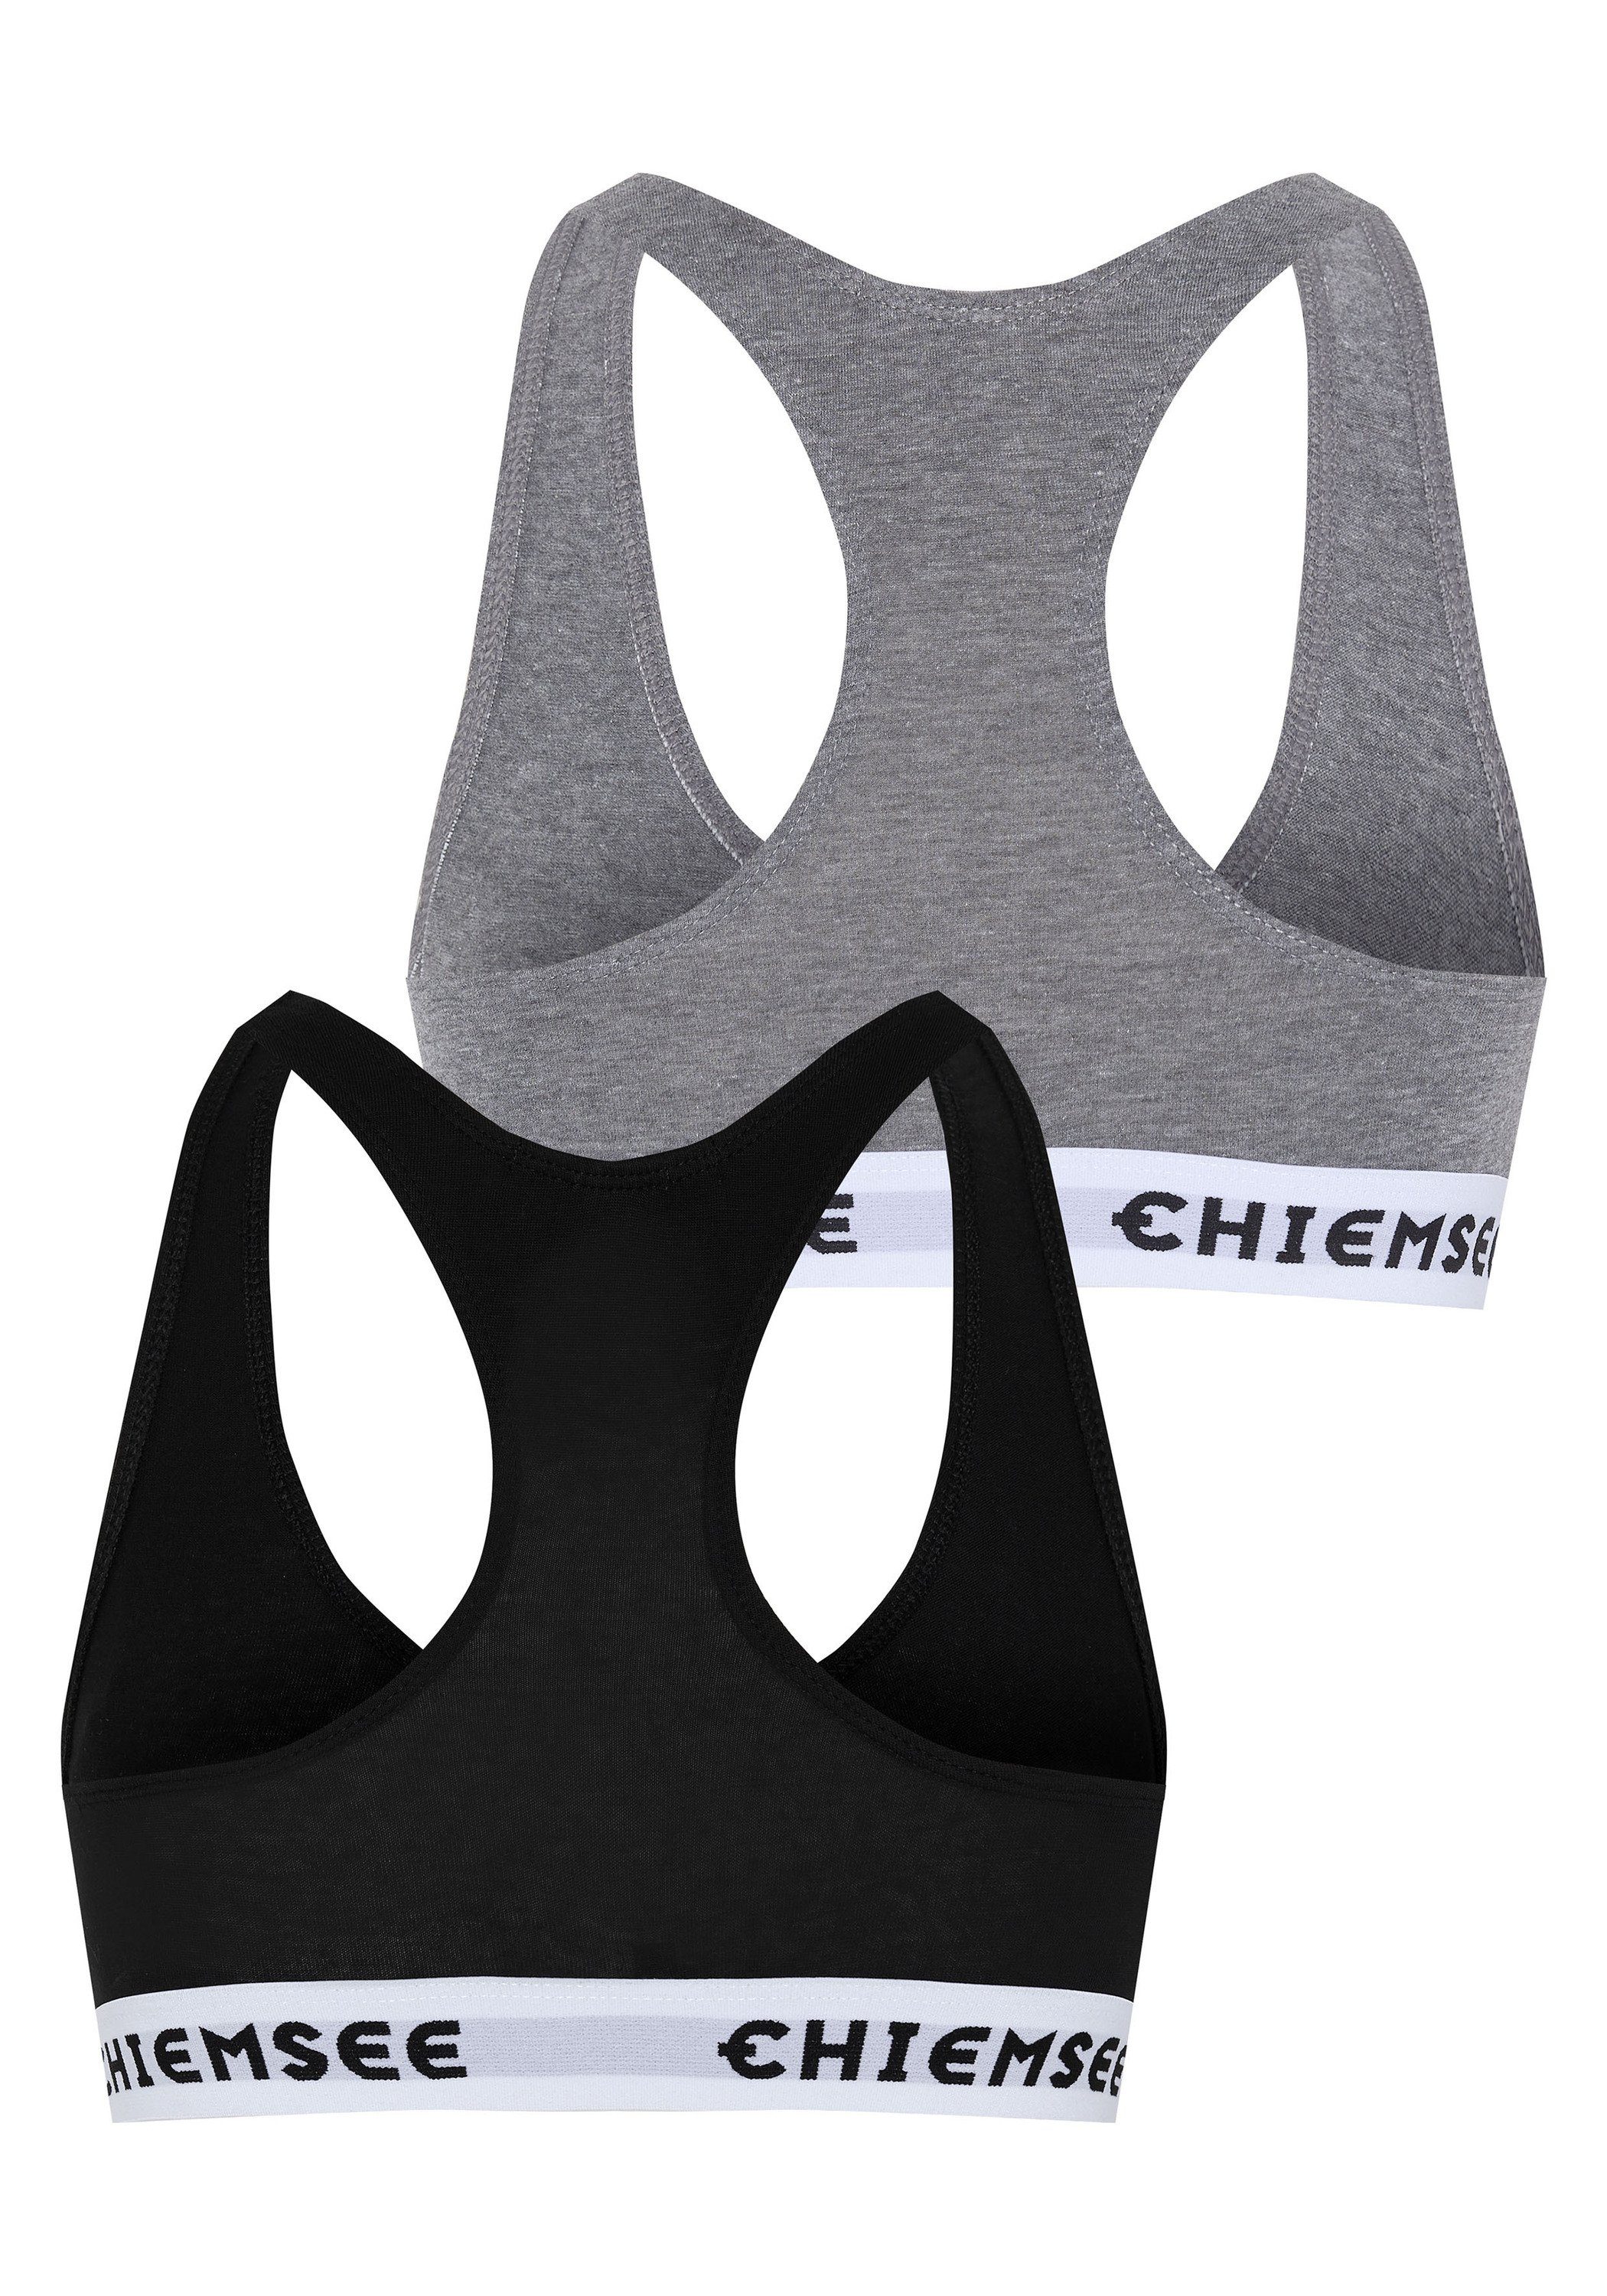 Medium Grey/Black Bustier 2 2er-Pack Chiemsee mit Logos (Set) Sport-BH